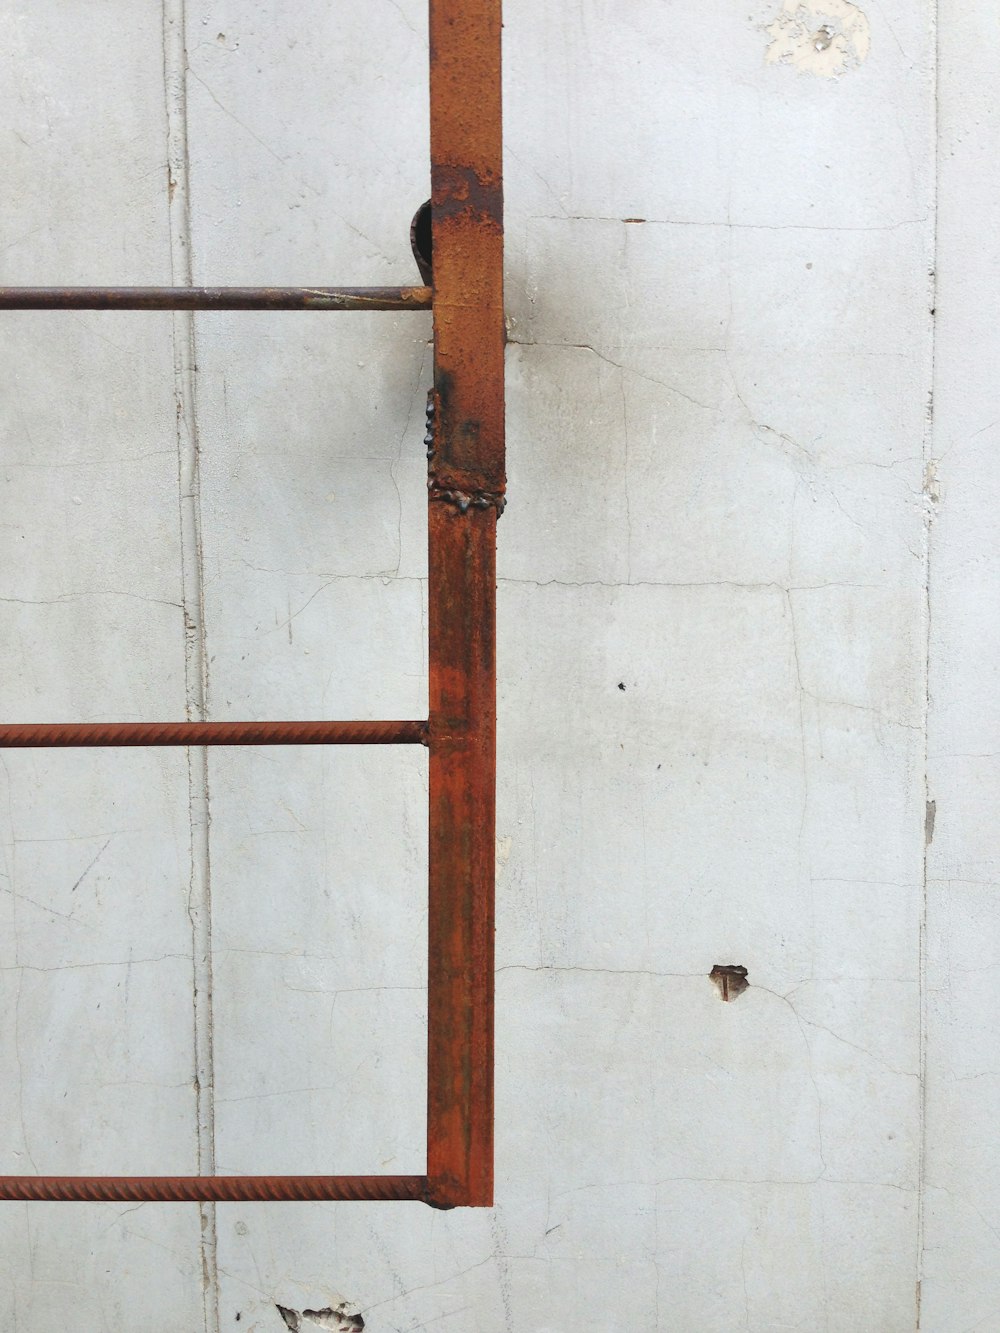 Escalera de metal marrón en la pared